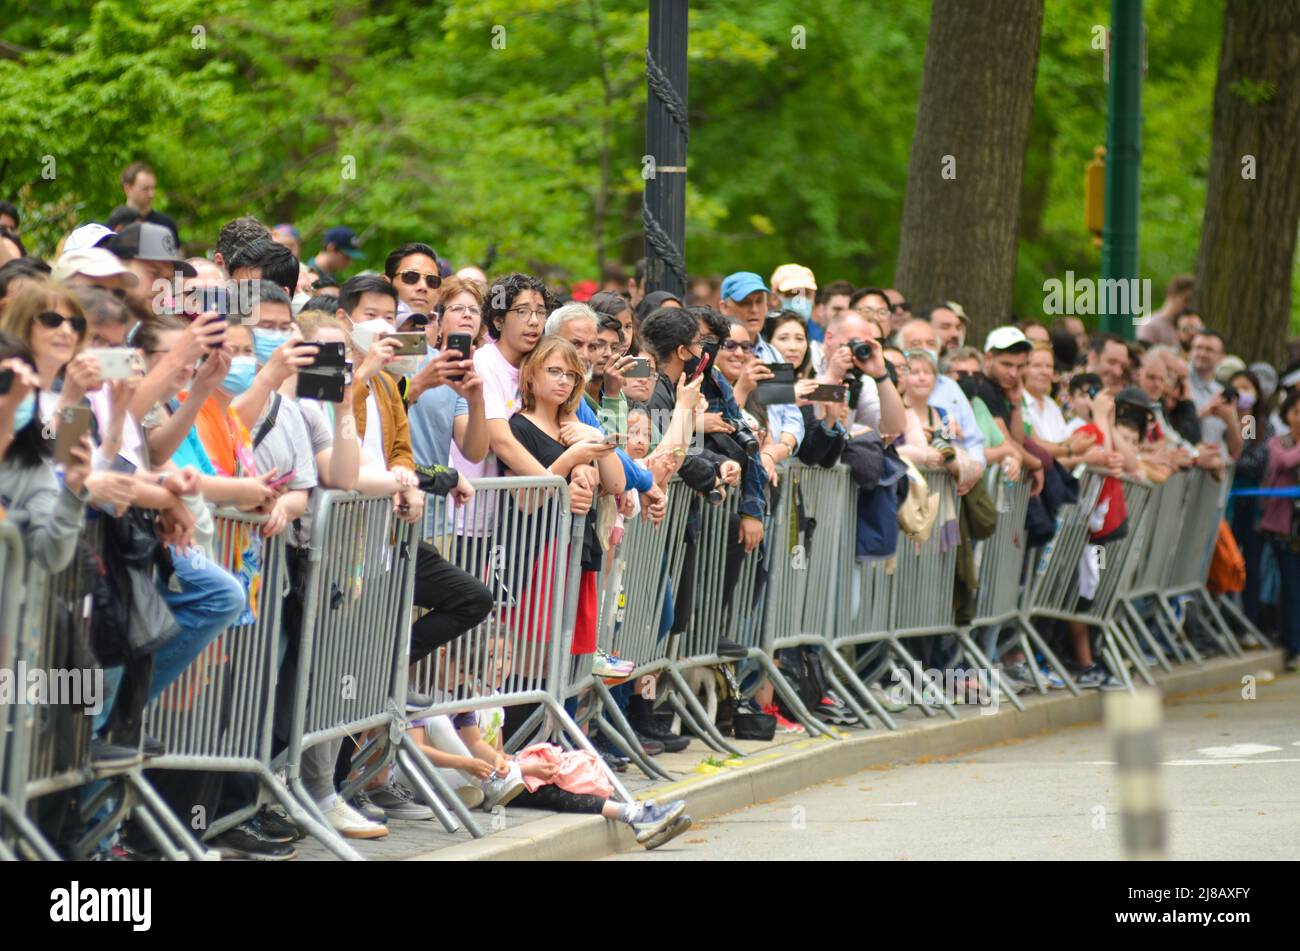 Am 14. Mai 2022 versammelten sich die Zuschauer im Central Park West, New York City, um die jährliche Parade zum Japanischen Tag zu feiern. Stockfoto